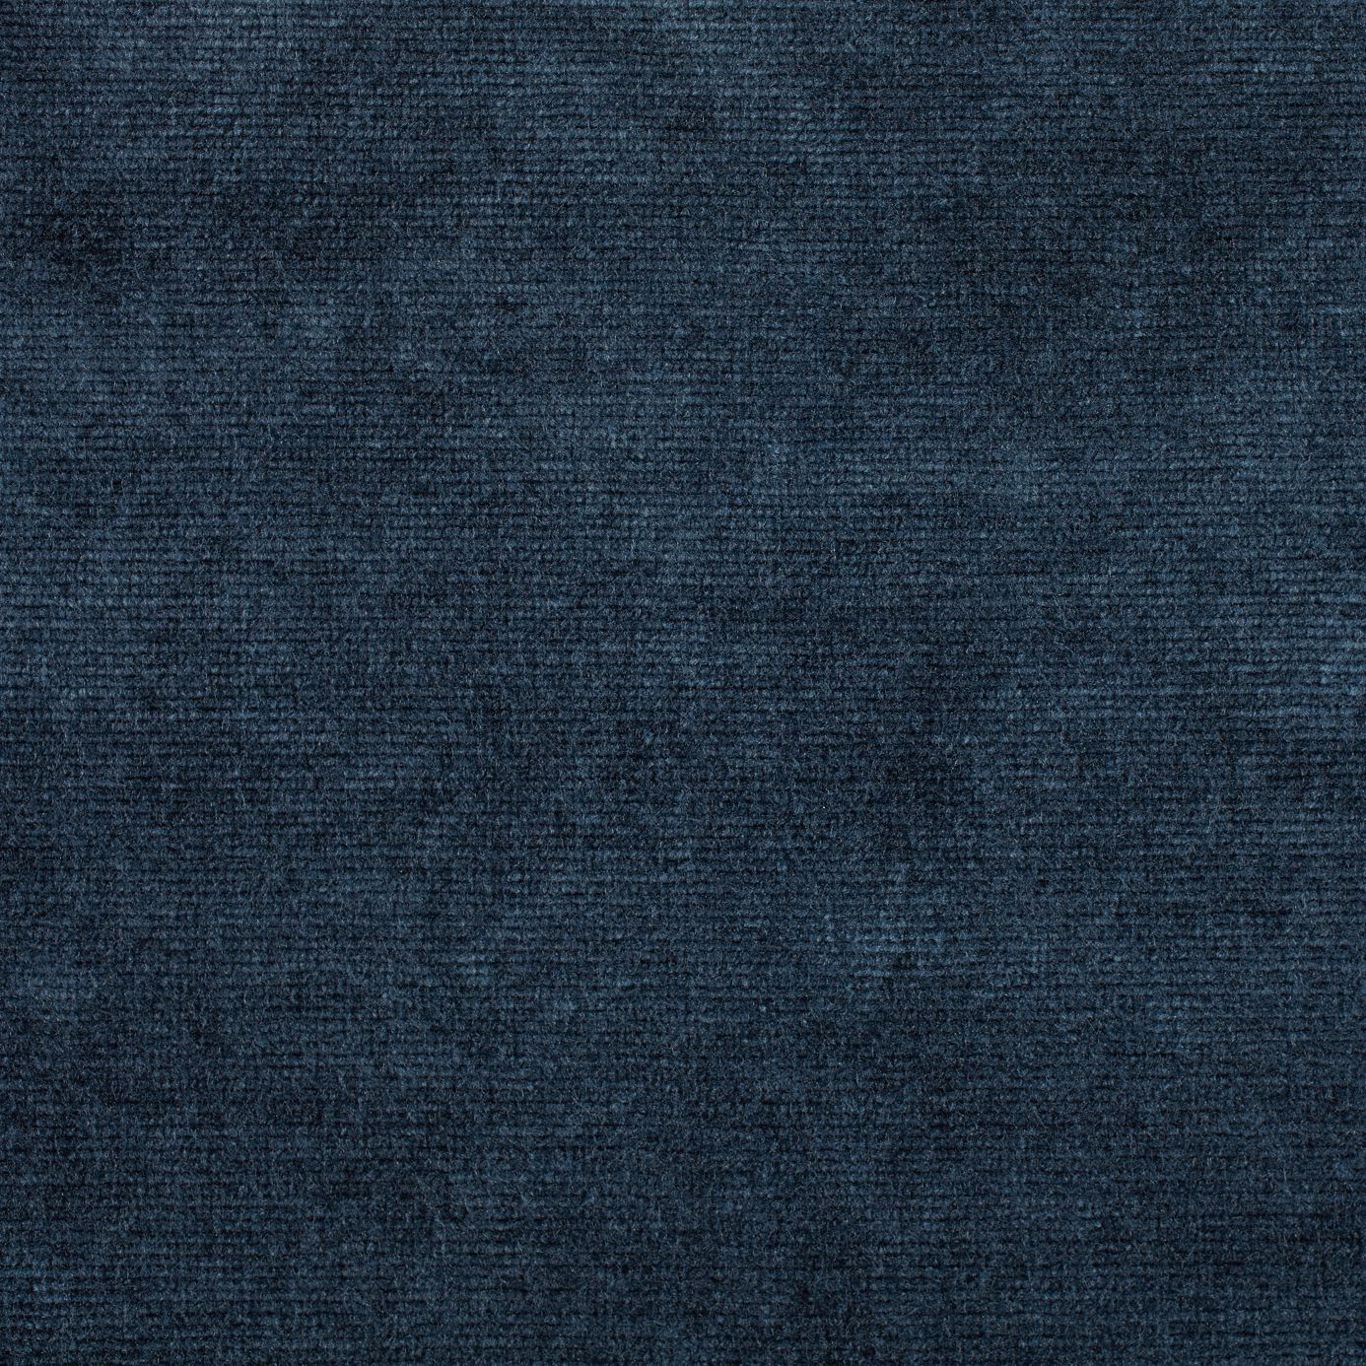 Boho Velvets Fabric by Sanderson - DVLV235269 - Indigo